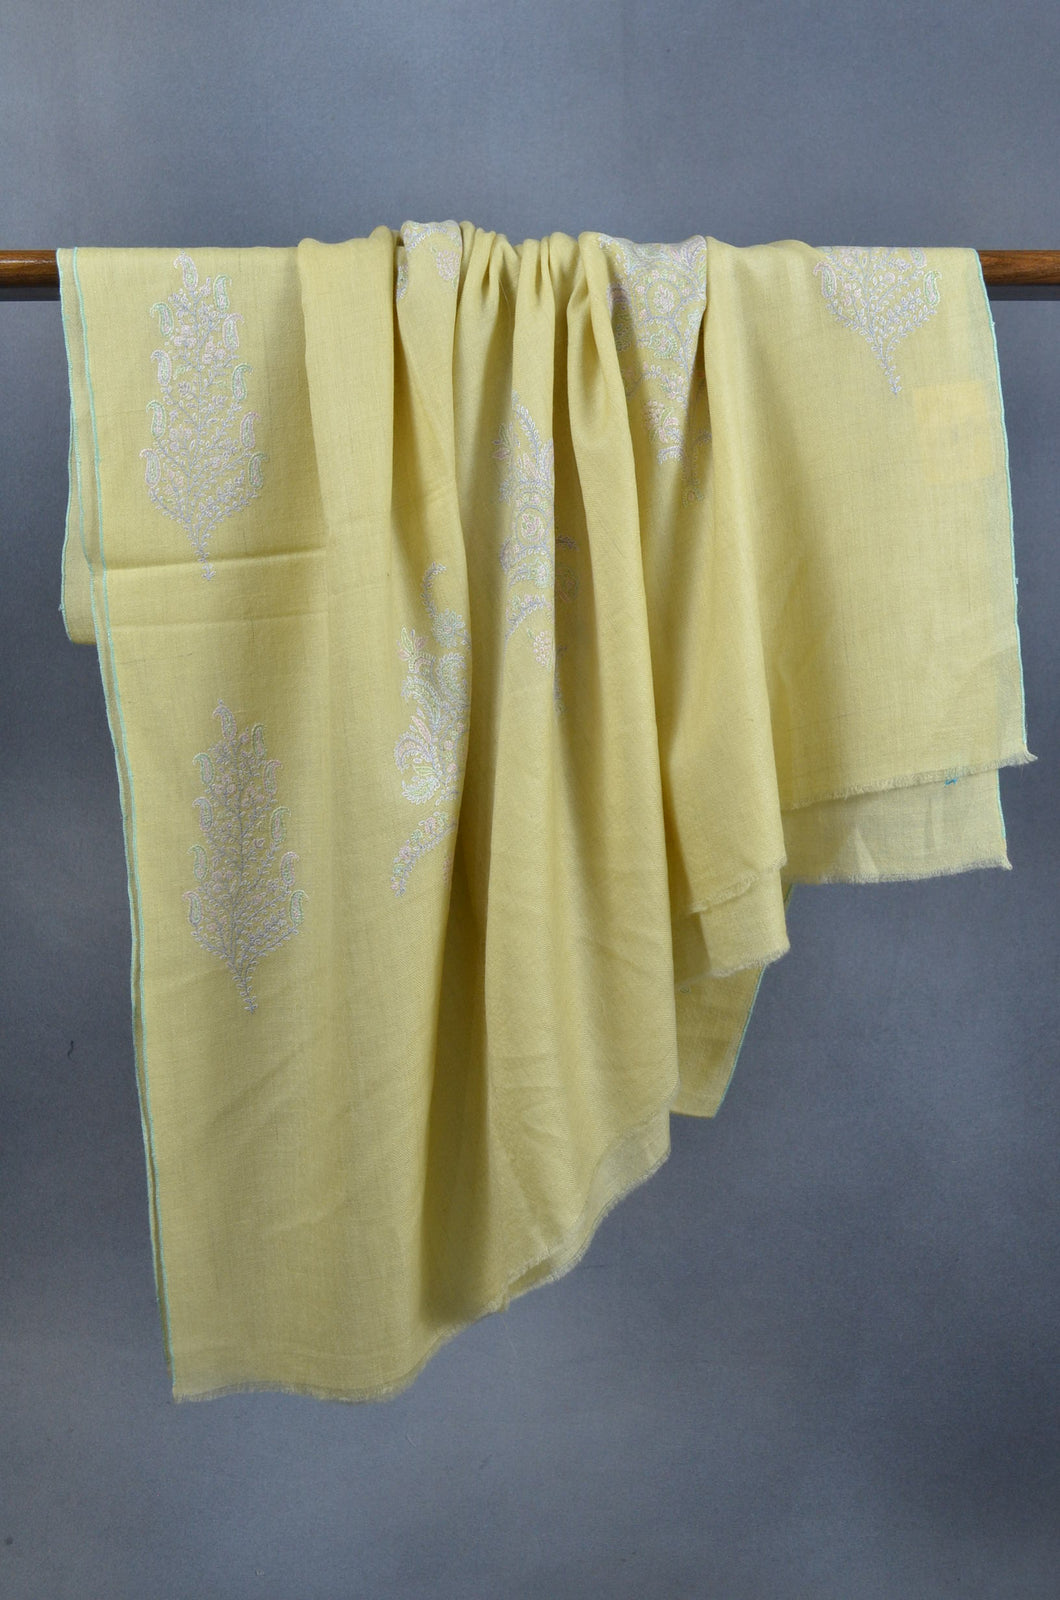 Lemon yellow Embroidery Pashmina Cashmere Shawl